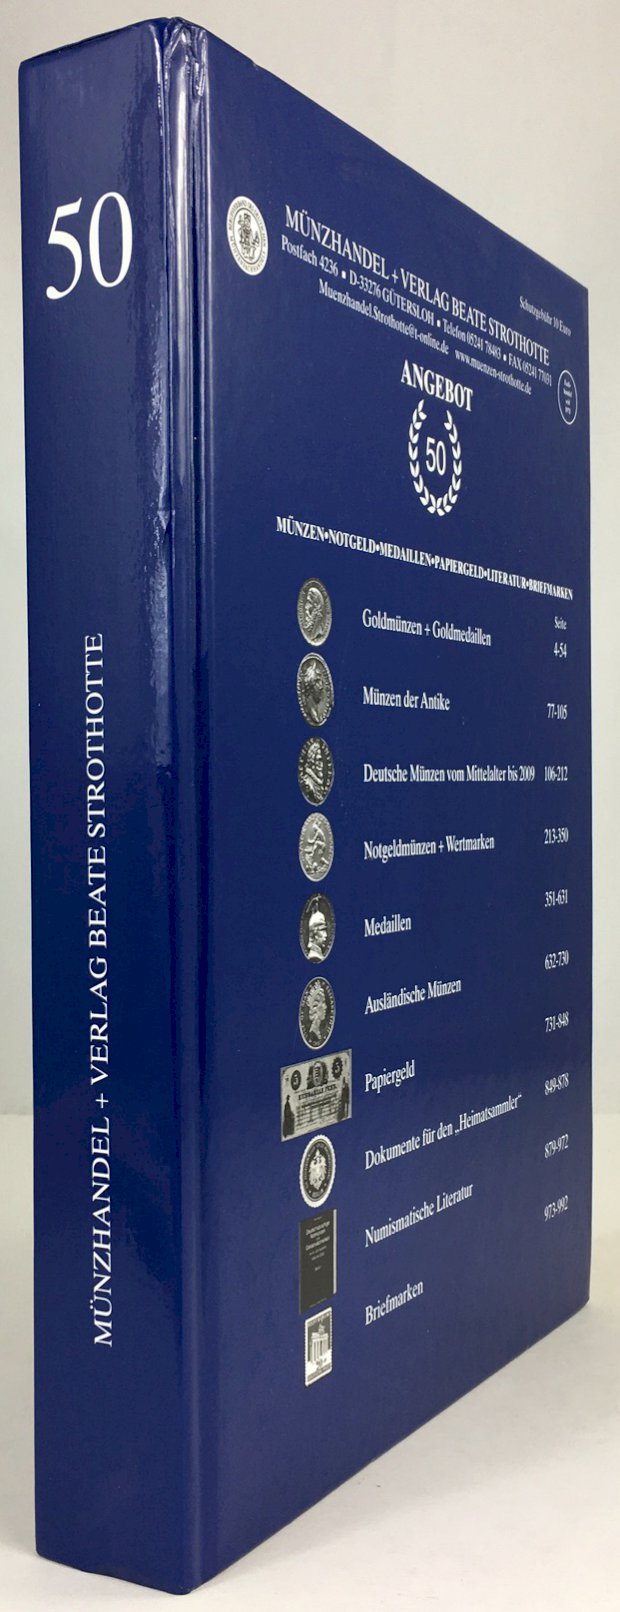 Abbildung von "Angebot Nr. 50 (Jubiläumsangebot). Münzen, Notgeld, Medaillen, Papiergeld, Literatur, Briefmarken."